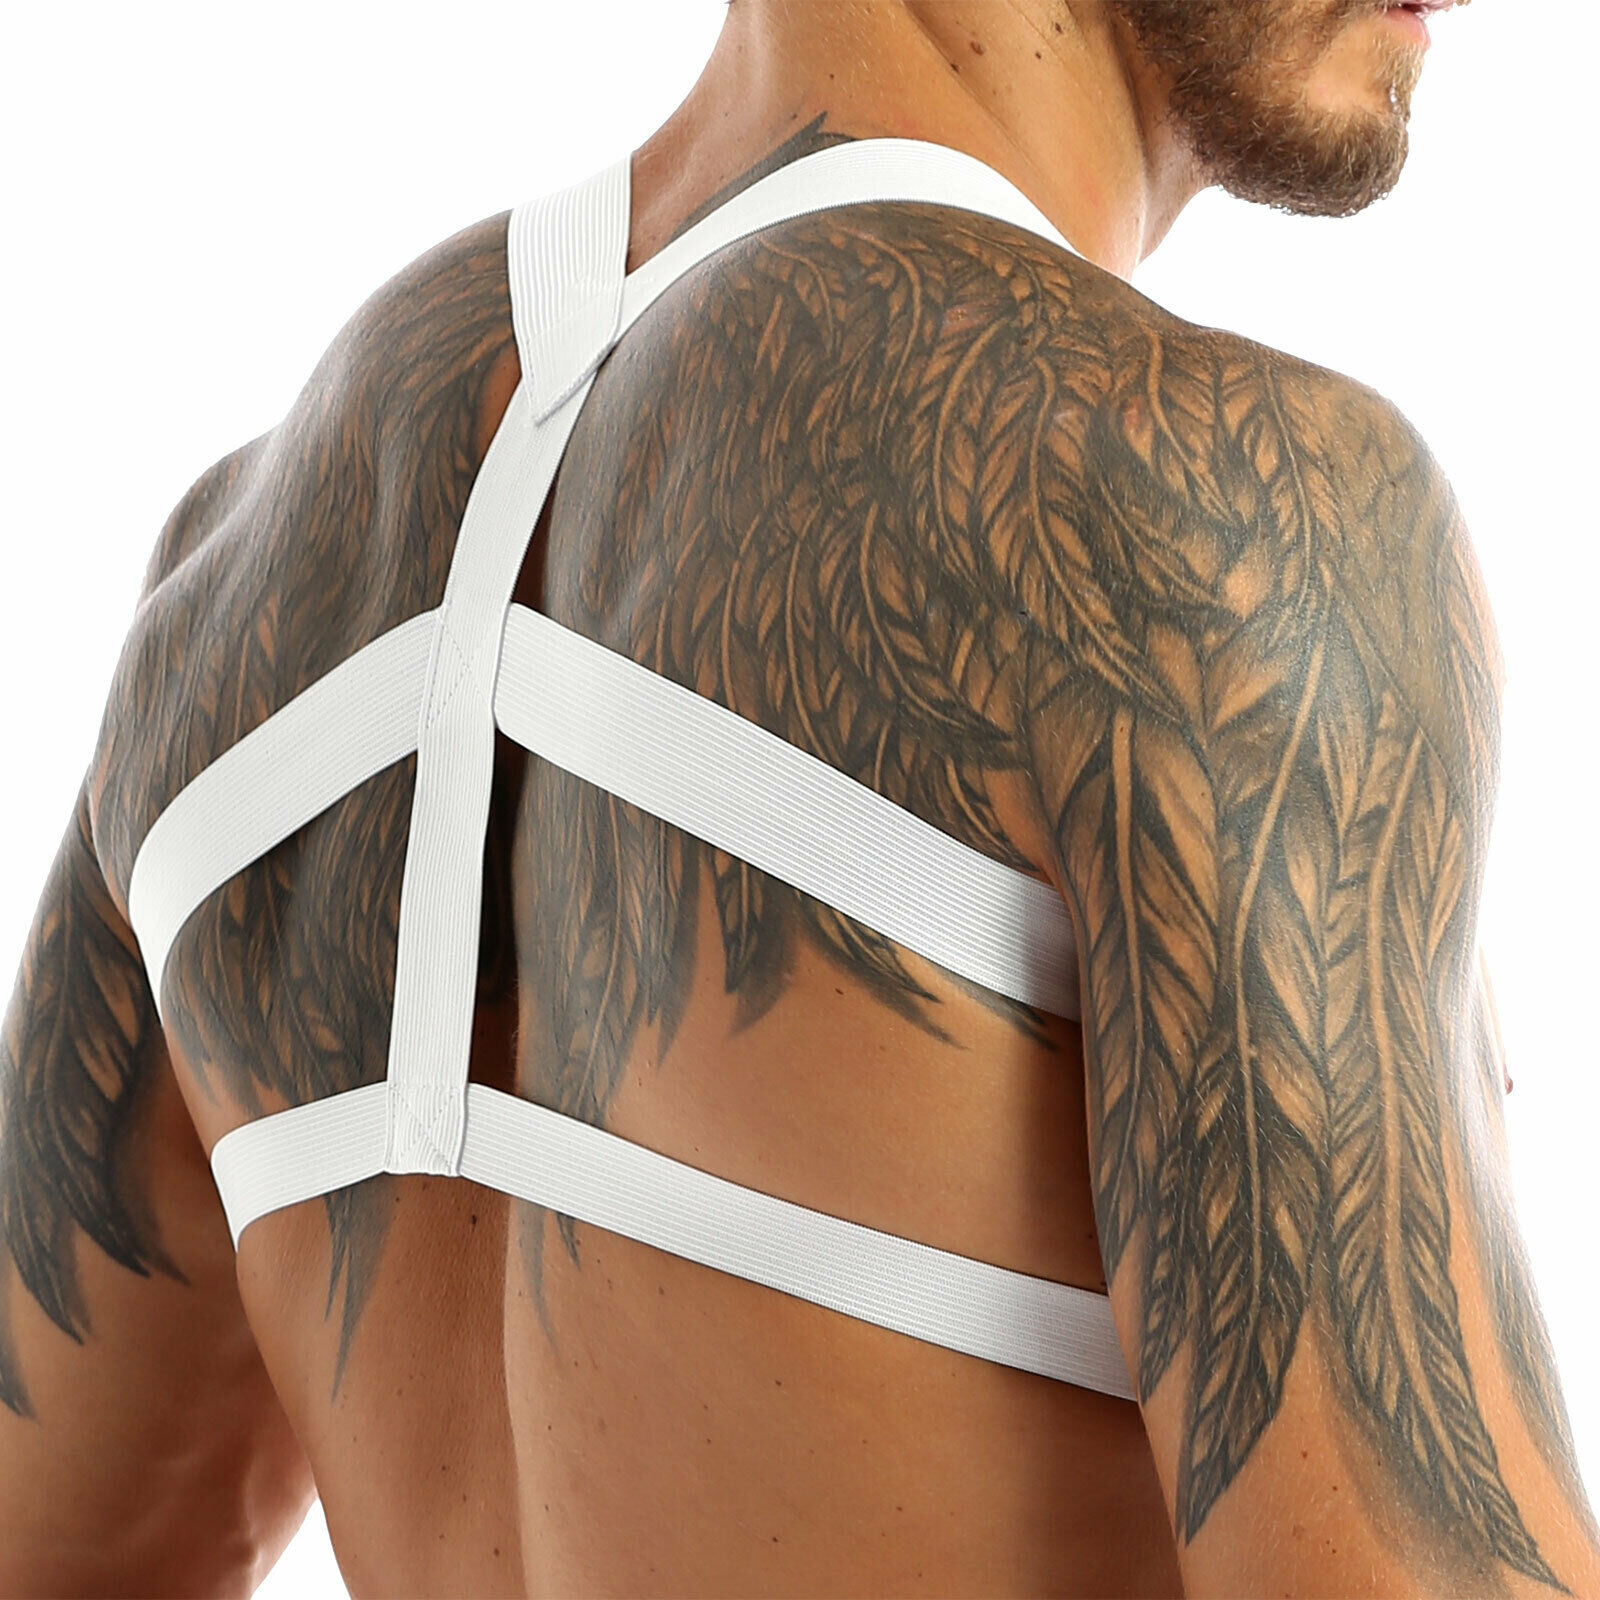 Harness  von INCERUN  Model " BASIC" in Weiss im Gay Wear Fetisch Style